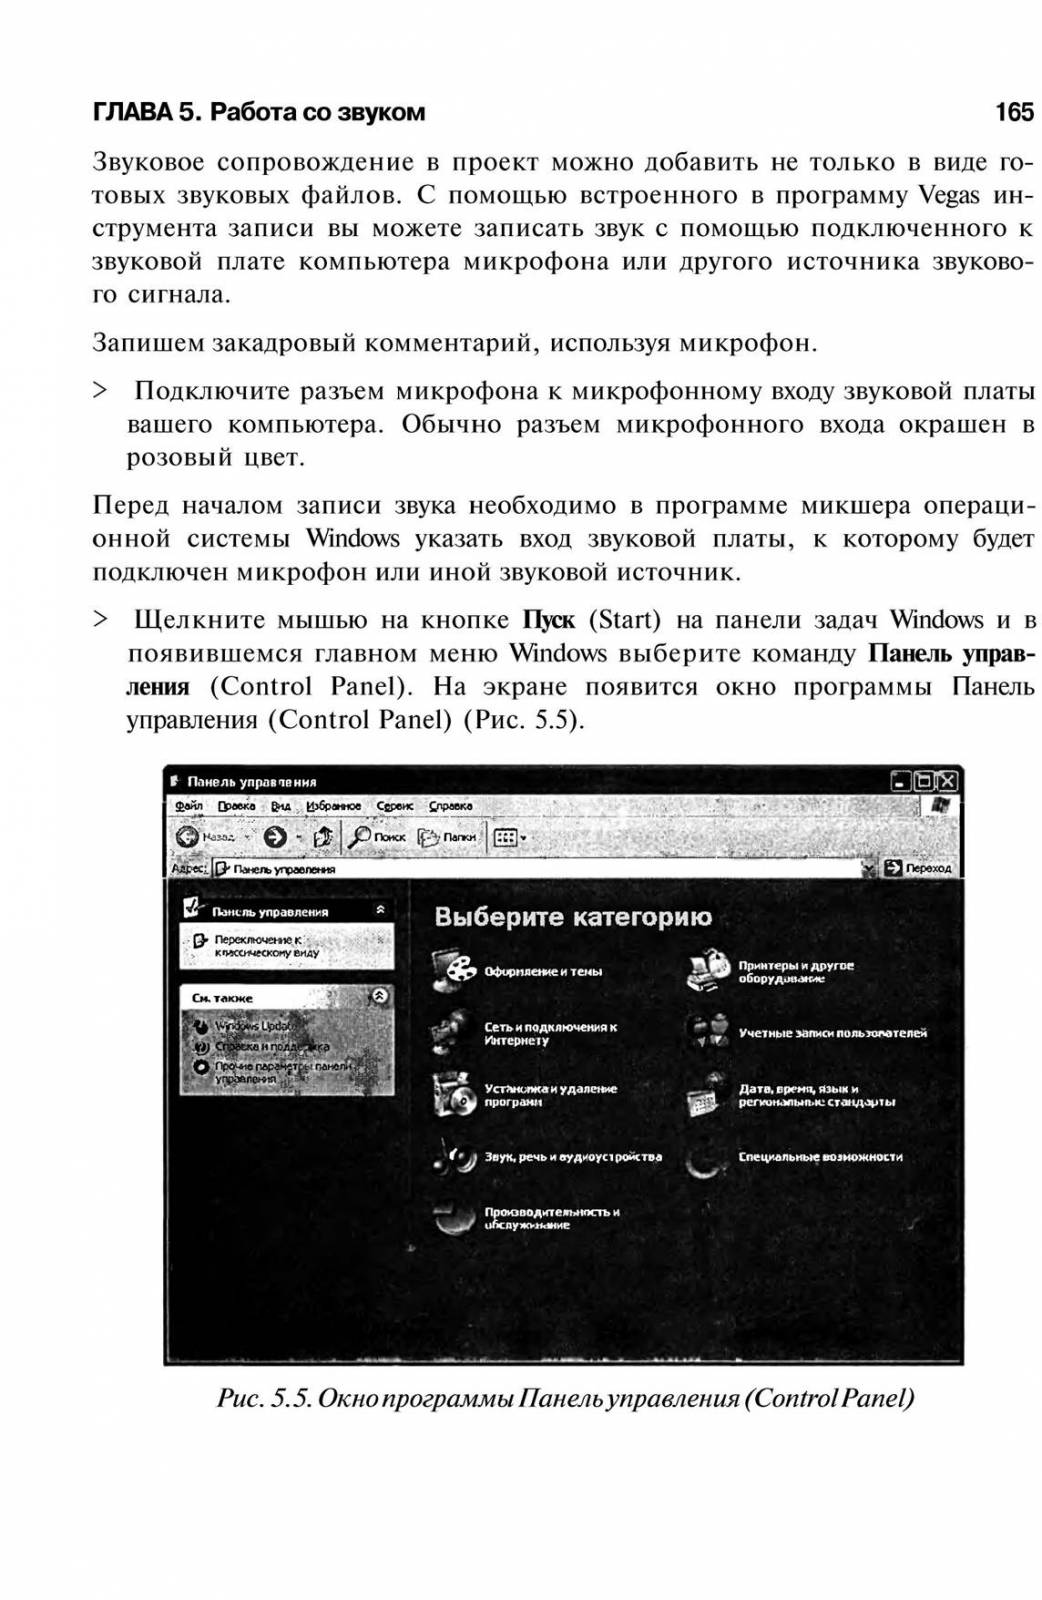 http://redaktori-uroki.3dn.ru/_ph/6/789376620.jpg